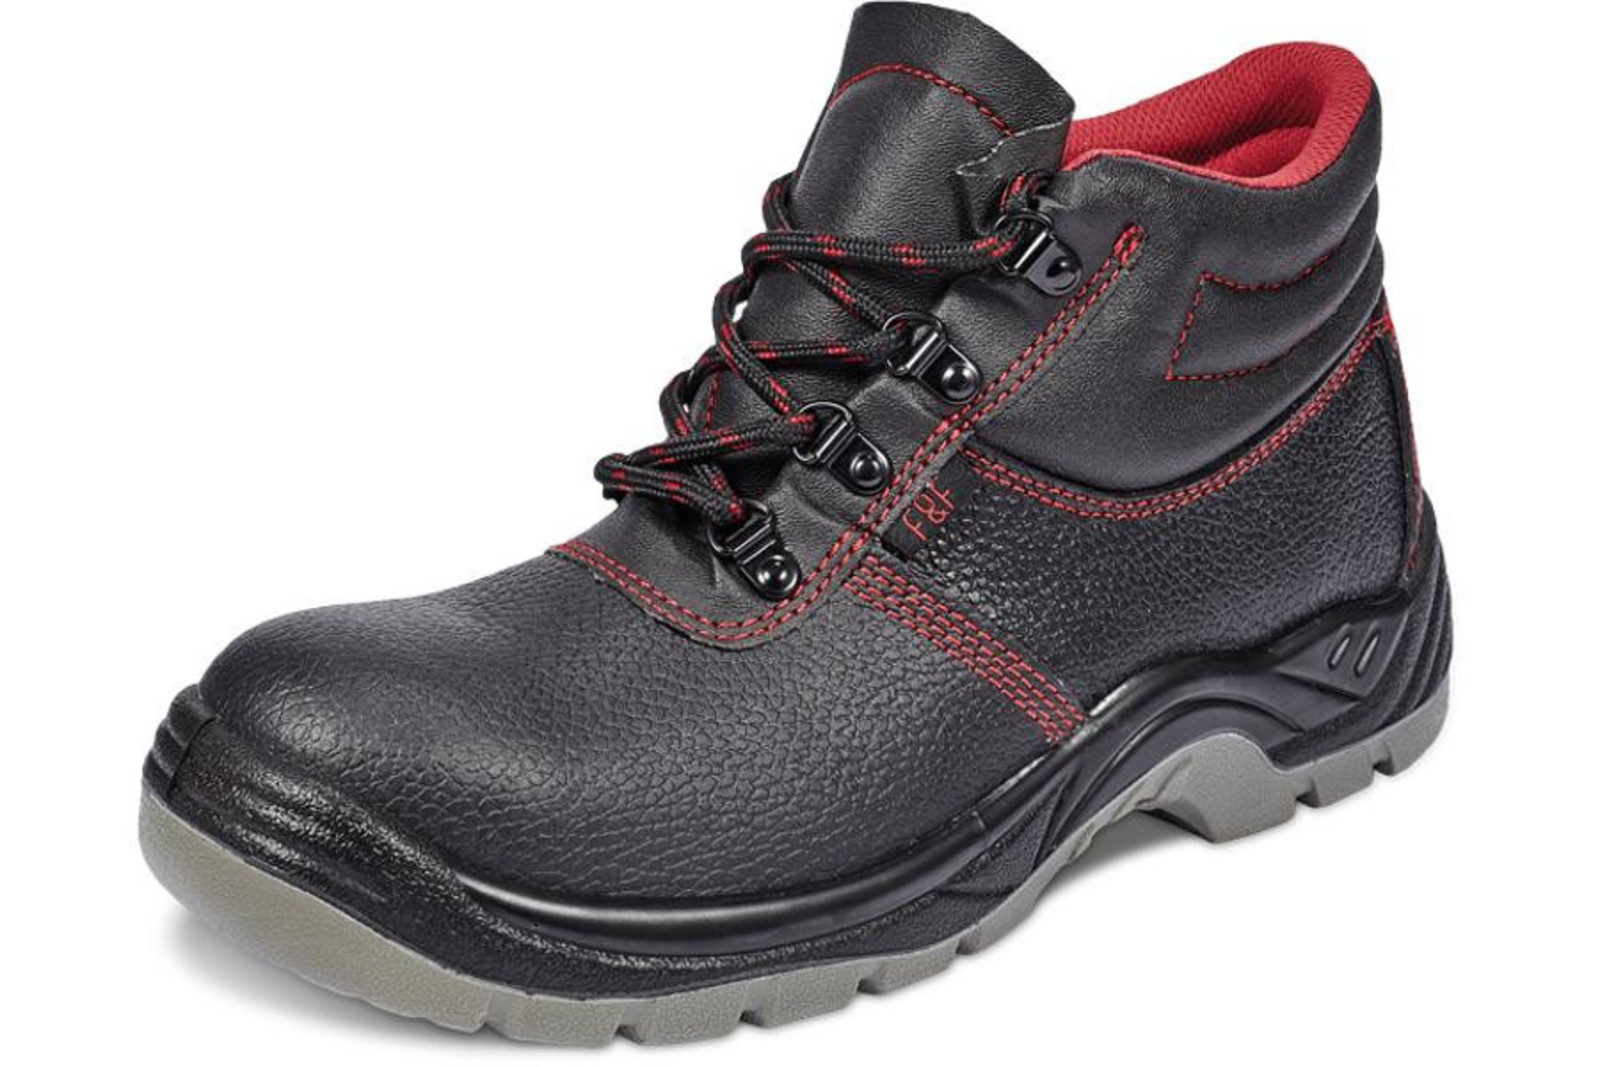 Bezpečnostná obuv SC 03-001 S1P - veľkosť: 42, farba: čierna